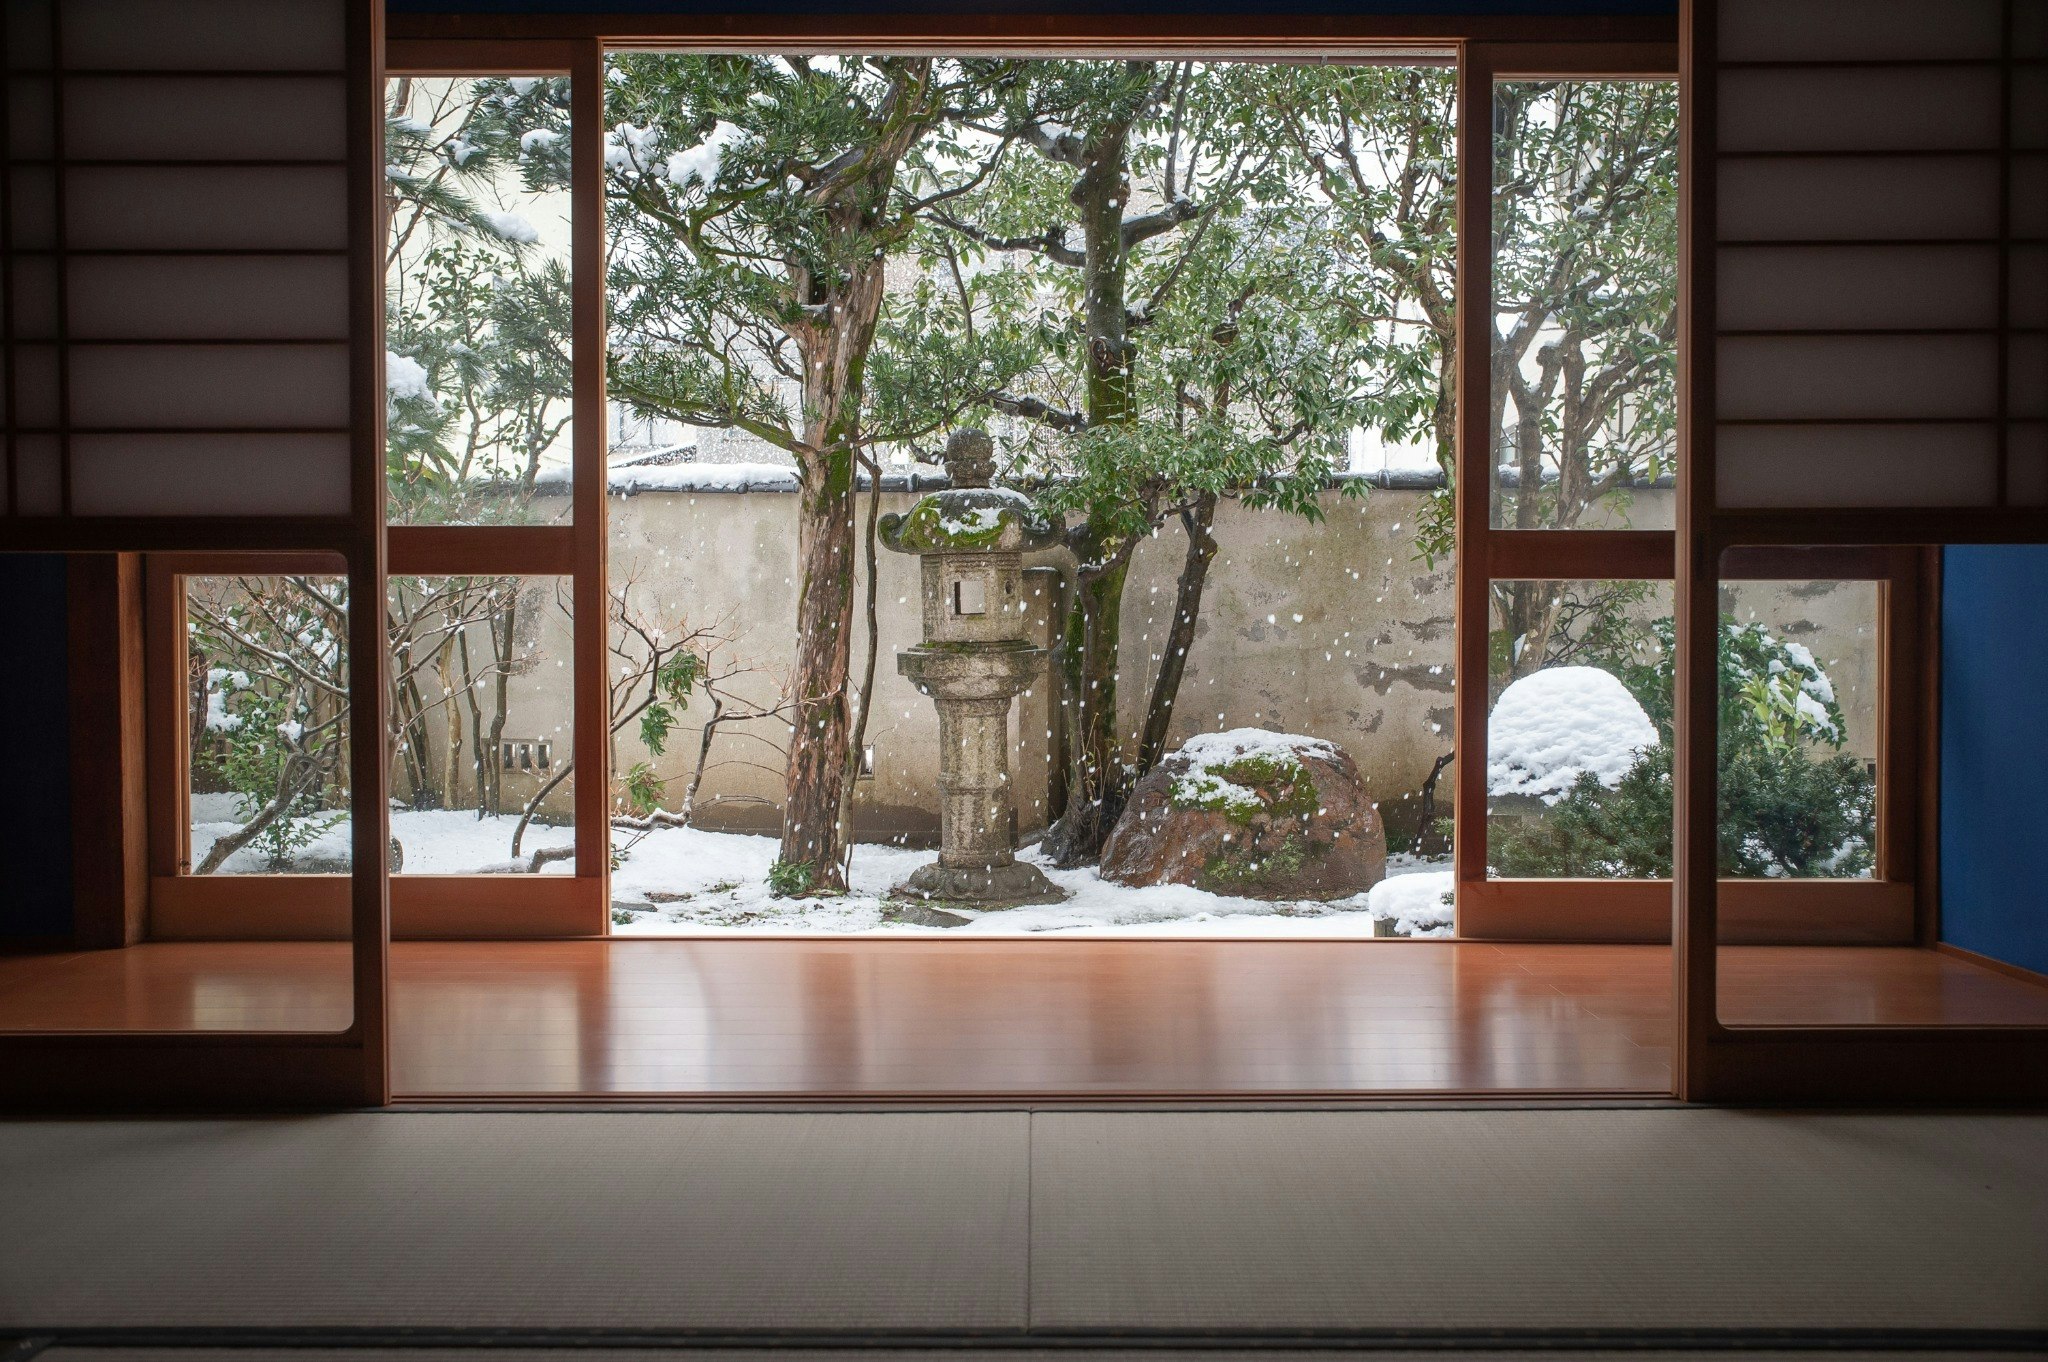 金沢の中心片町 坪庭と和室が魅力の宿 ゆったり広々140m2(寝室5部屋)